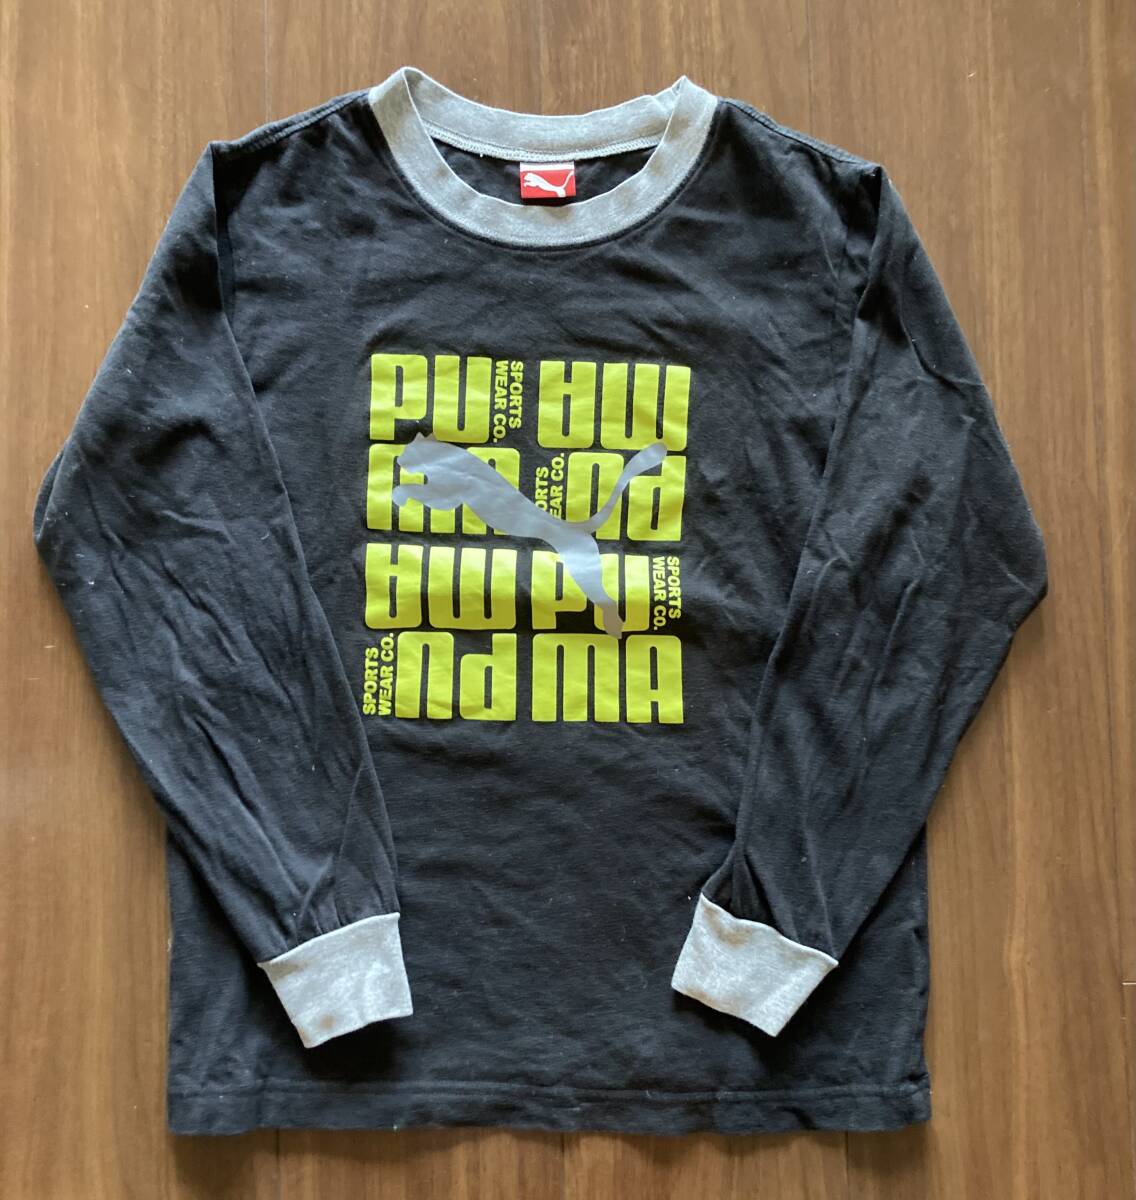  Зима  вещь  распродажа 　PUMA ...　... венок  　 длинный рукав   рубашка  　 футболка с коротким руковом     бонус  　 размер  140